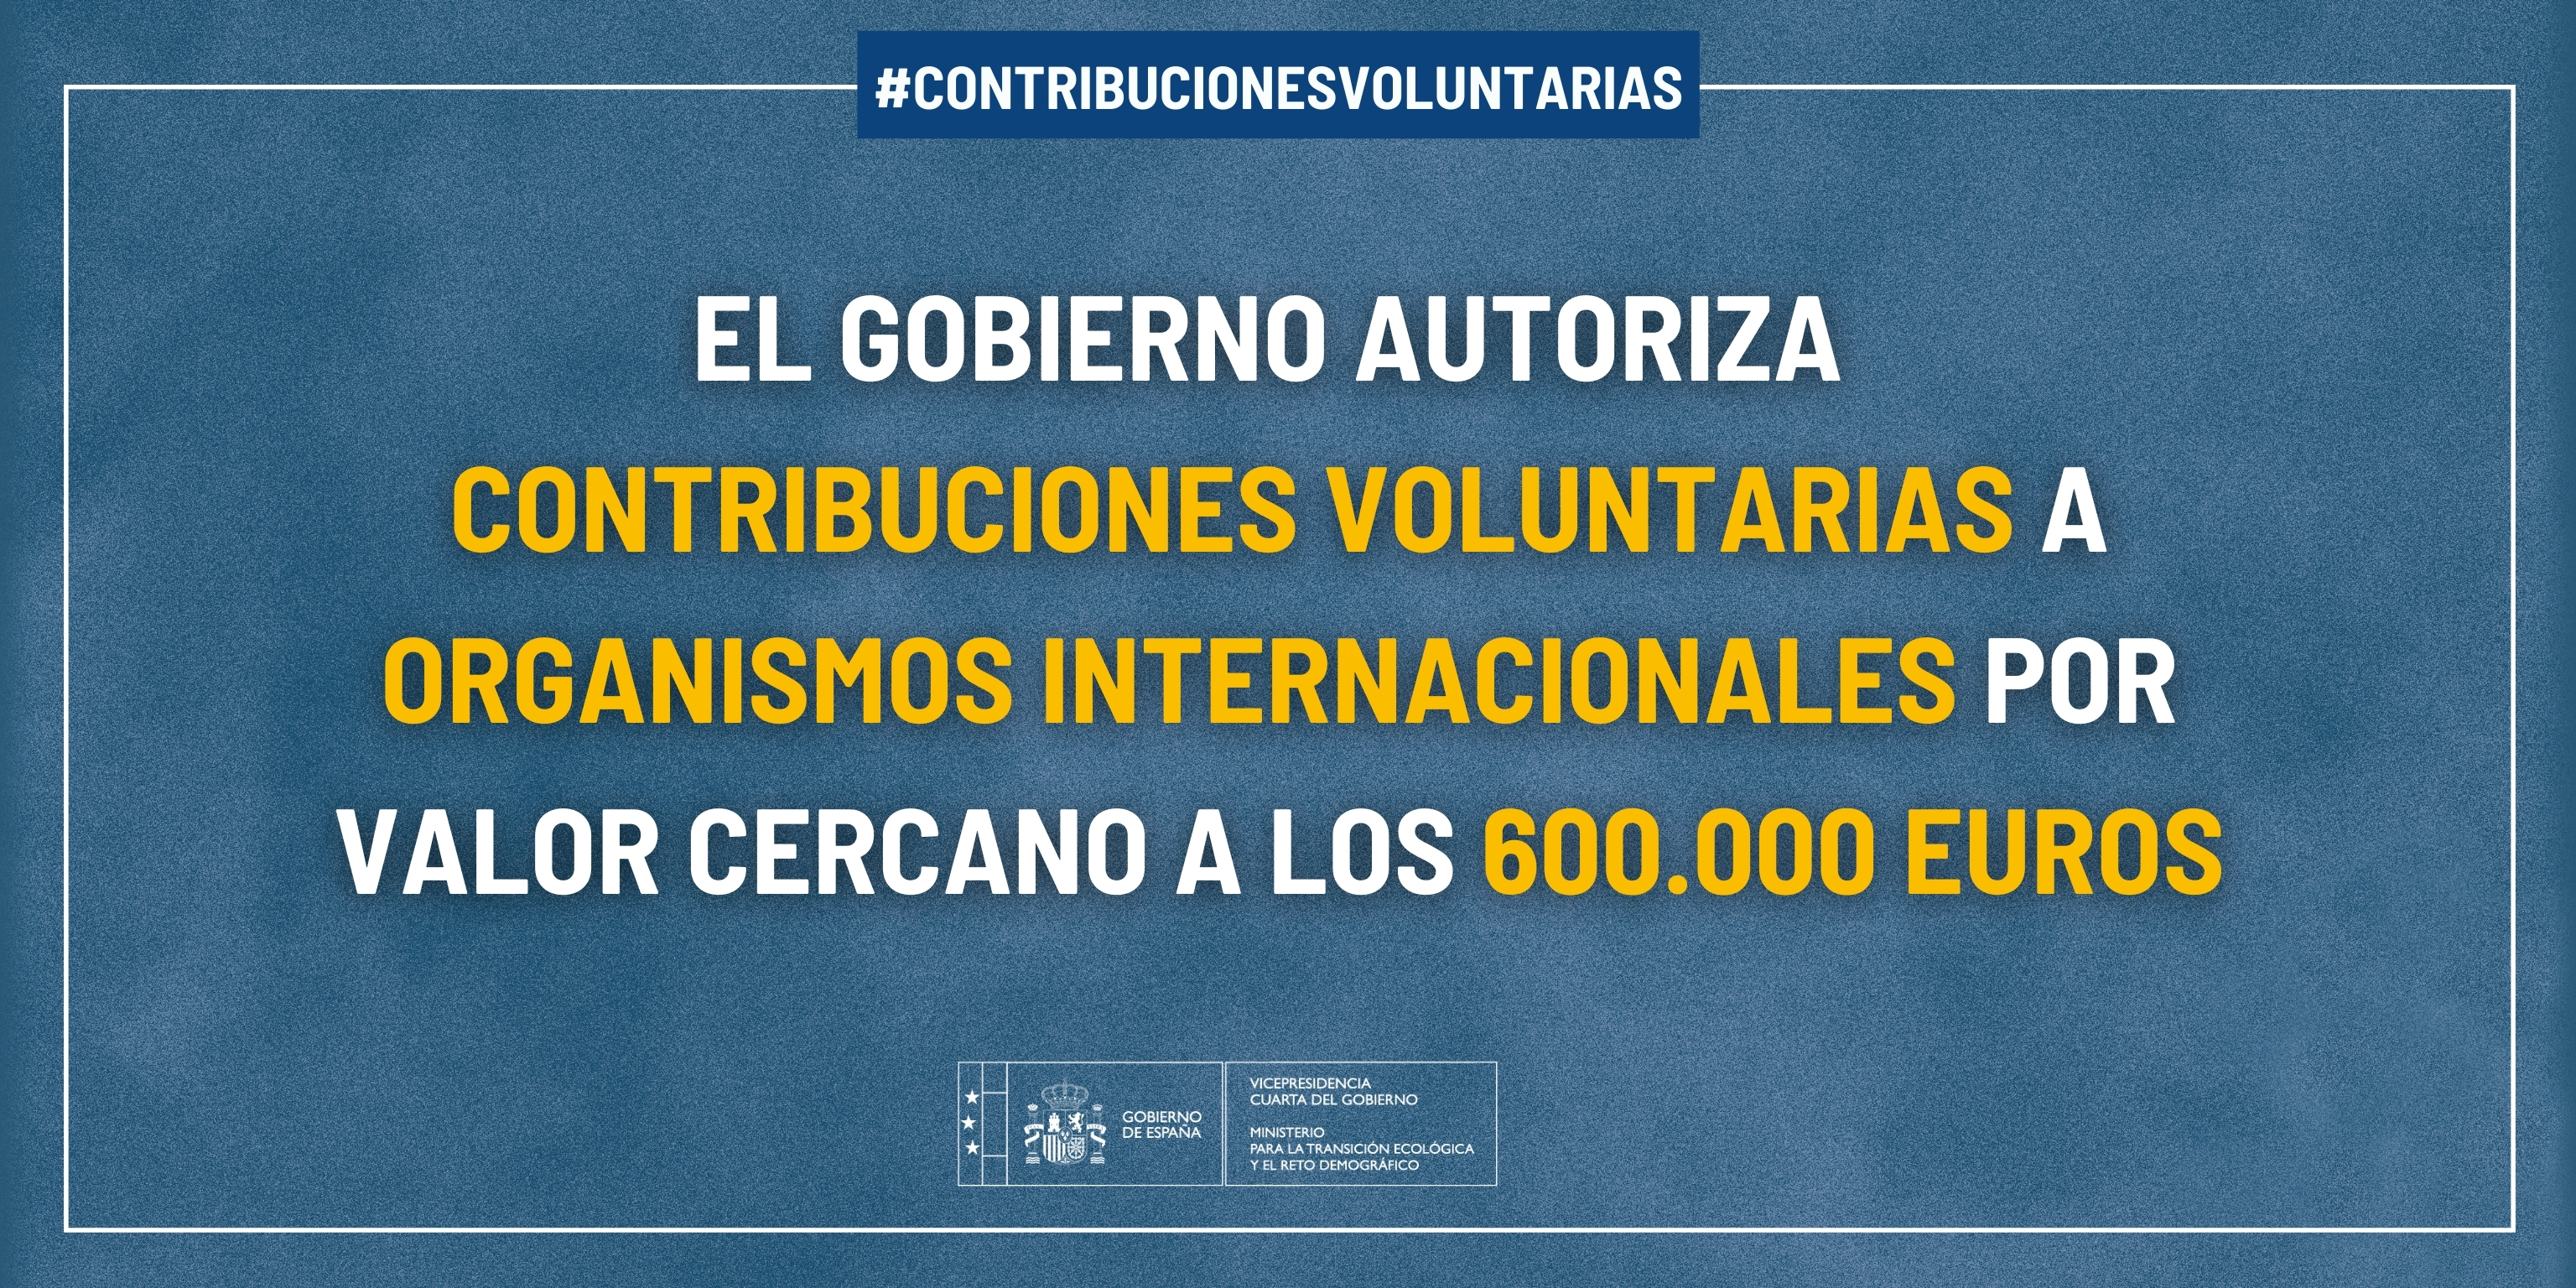  Contribuciones voluntariasEl Gobierno autoriza contribuciones voluntarias a organismos internacionales por valor cercano a los 600.000 euros 